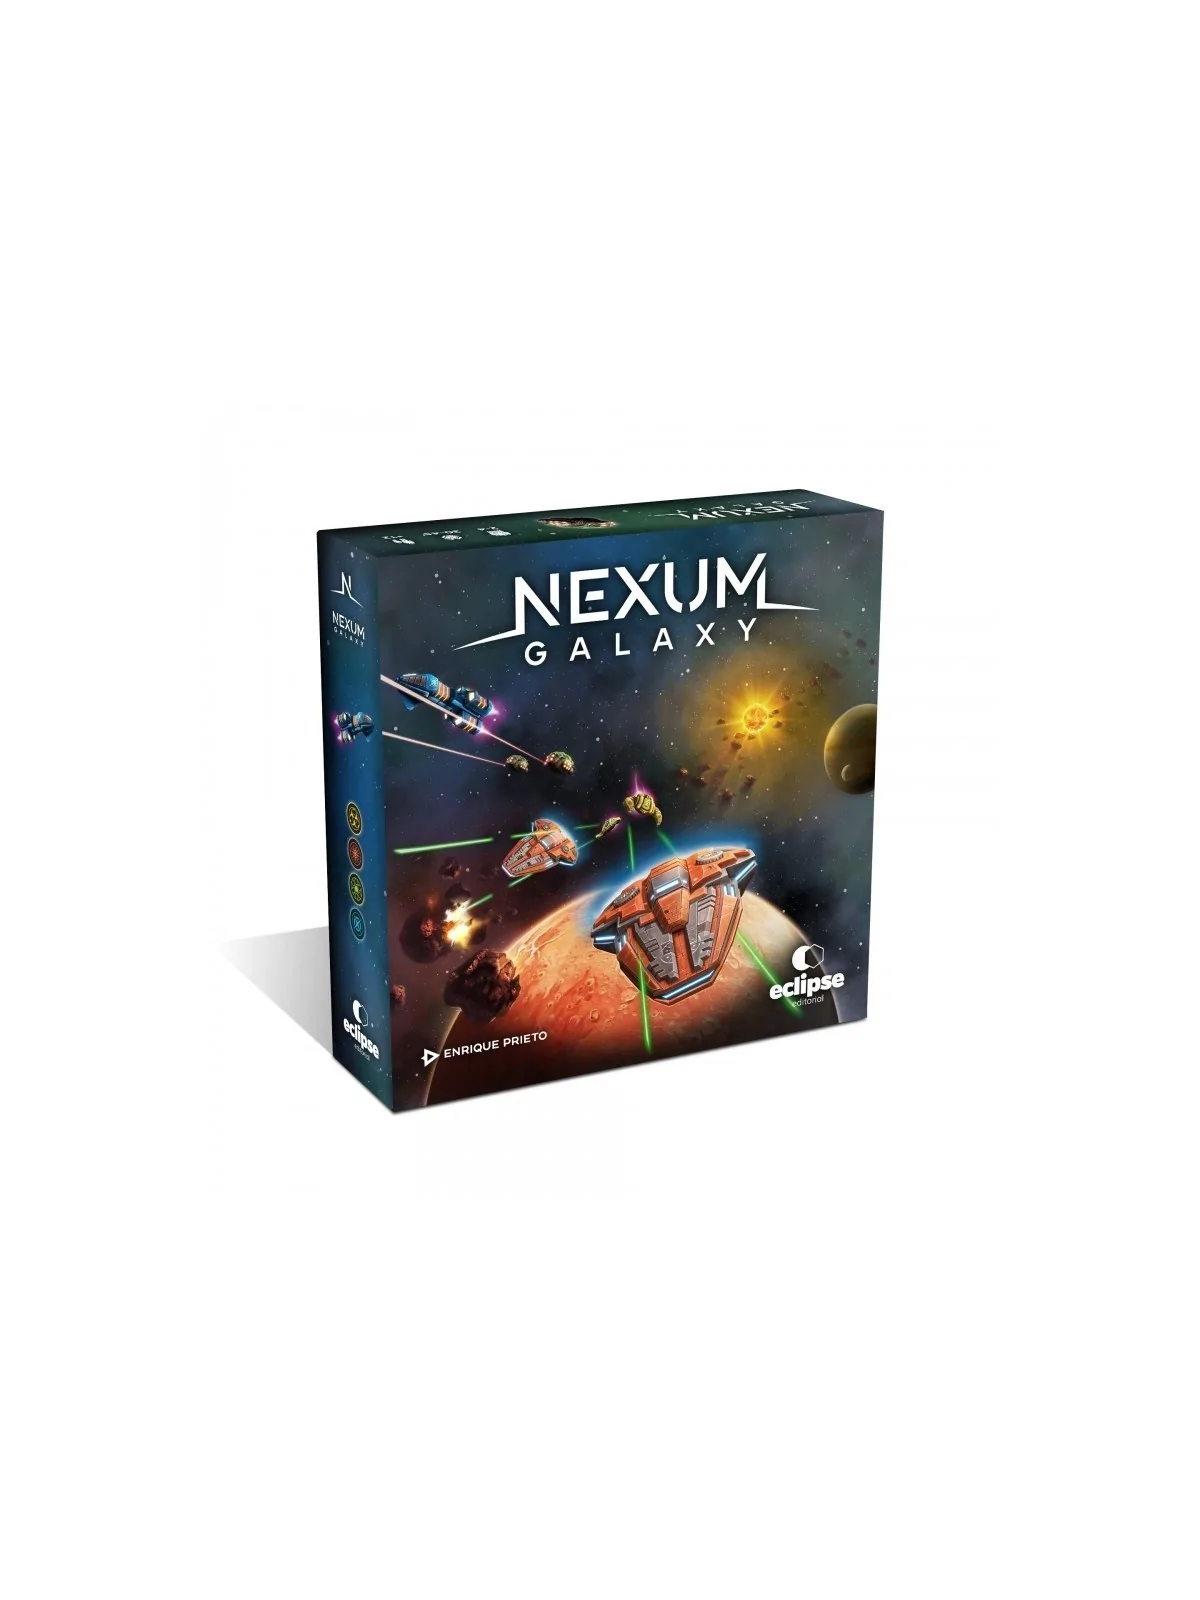 Comprar Nexum Galaxy barato al mejor precio 31,50 € de Draco Ideas